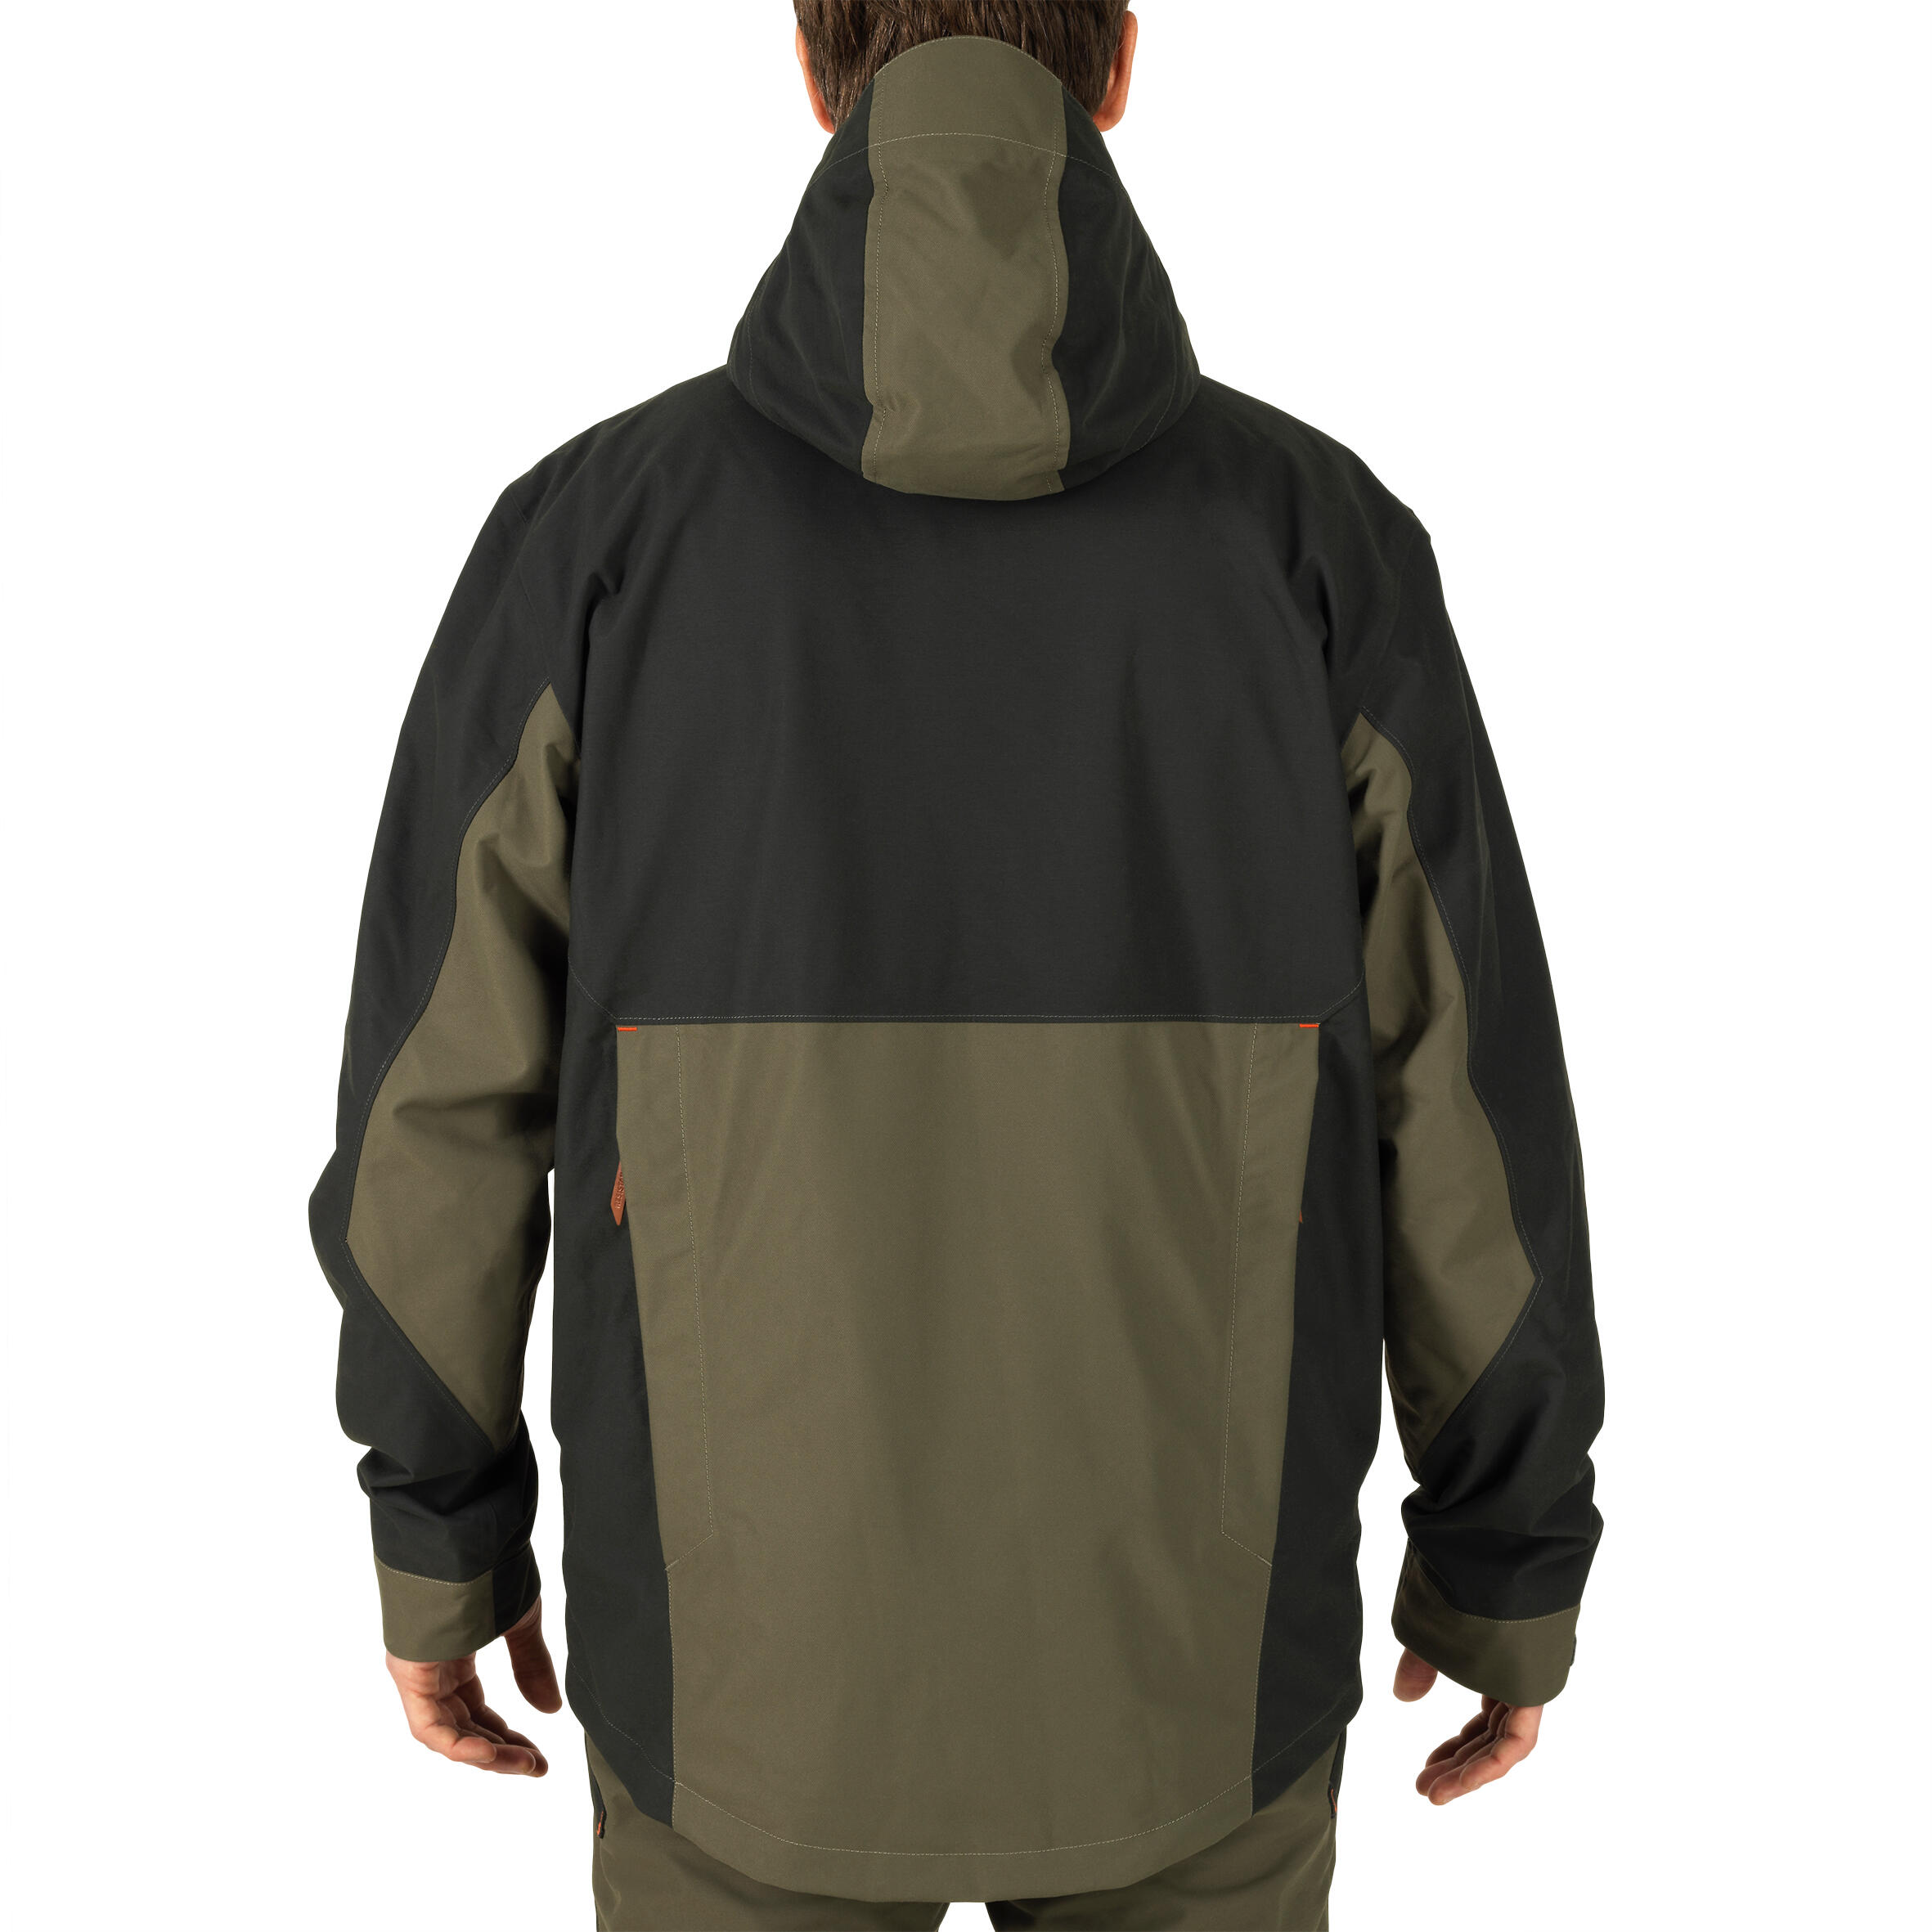 Reinforced Waterproof Jacket - Brown 3/21